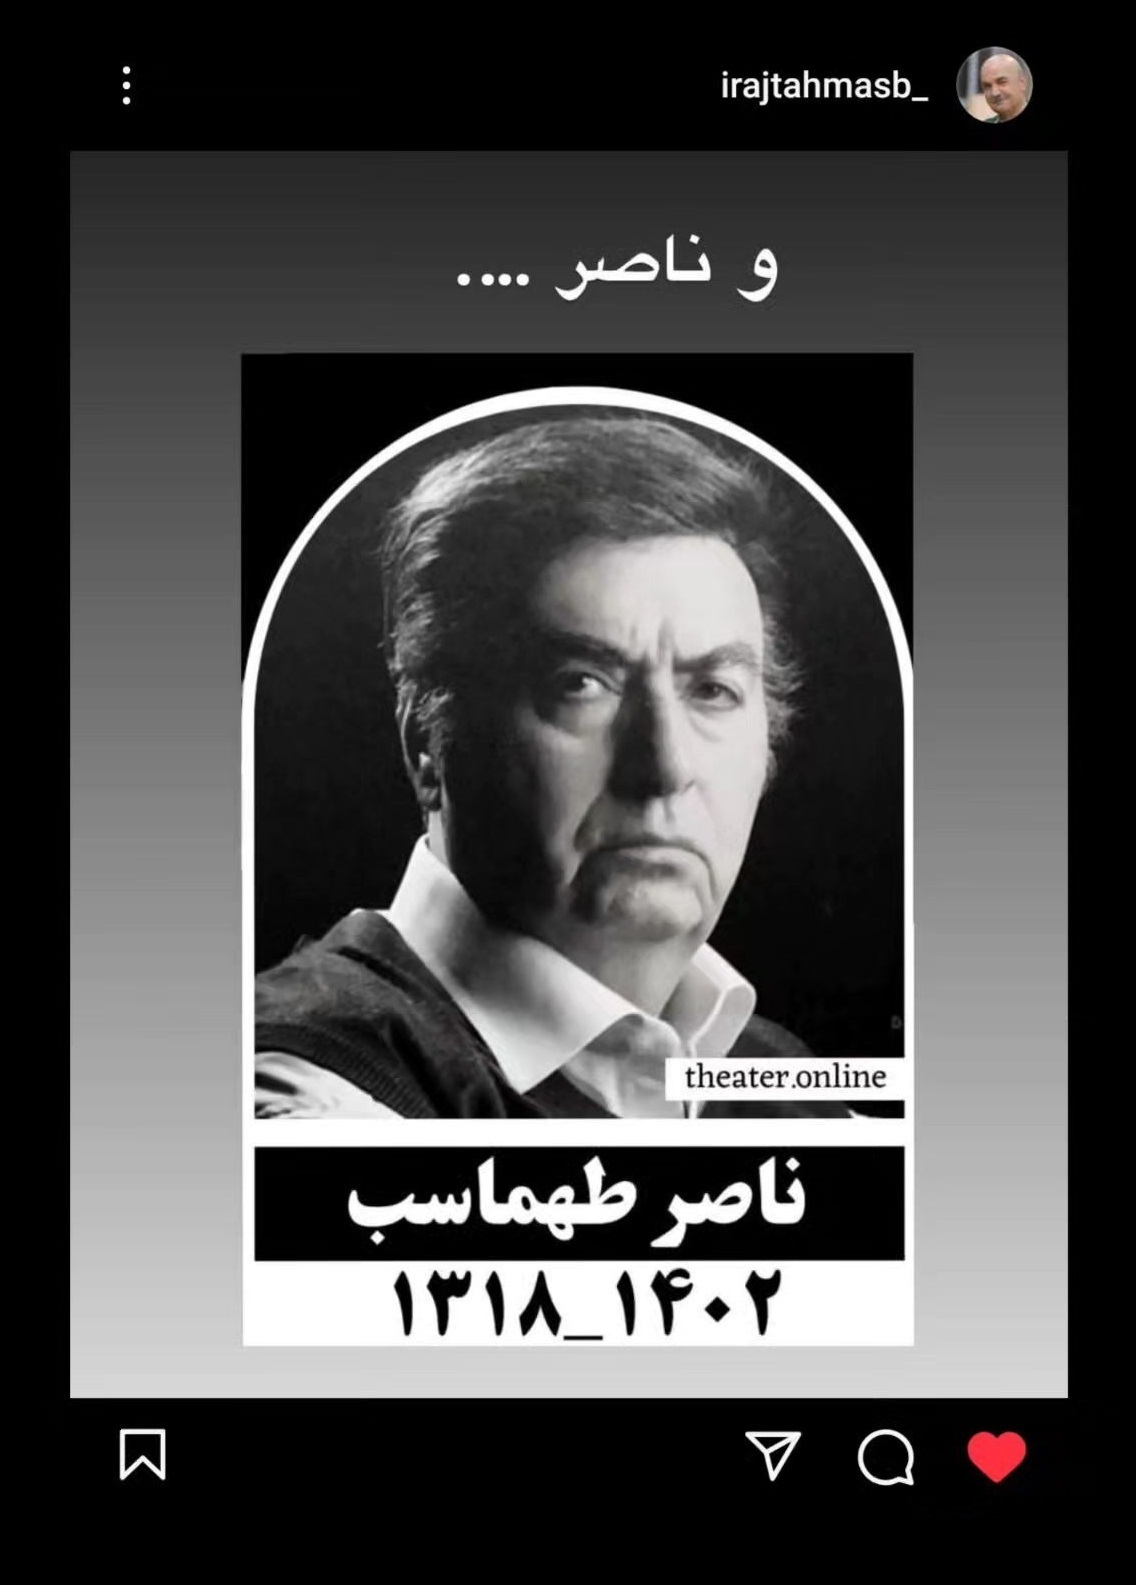 واکنش ایرج طهماسب (آقای مجری) به درگذشت برادرش ناصر طهماسب (عکس)